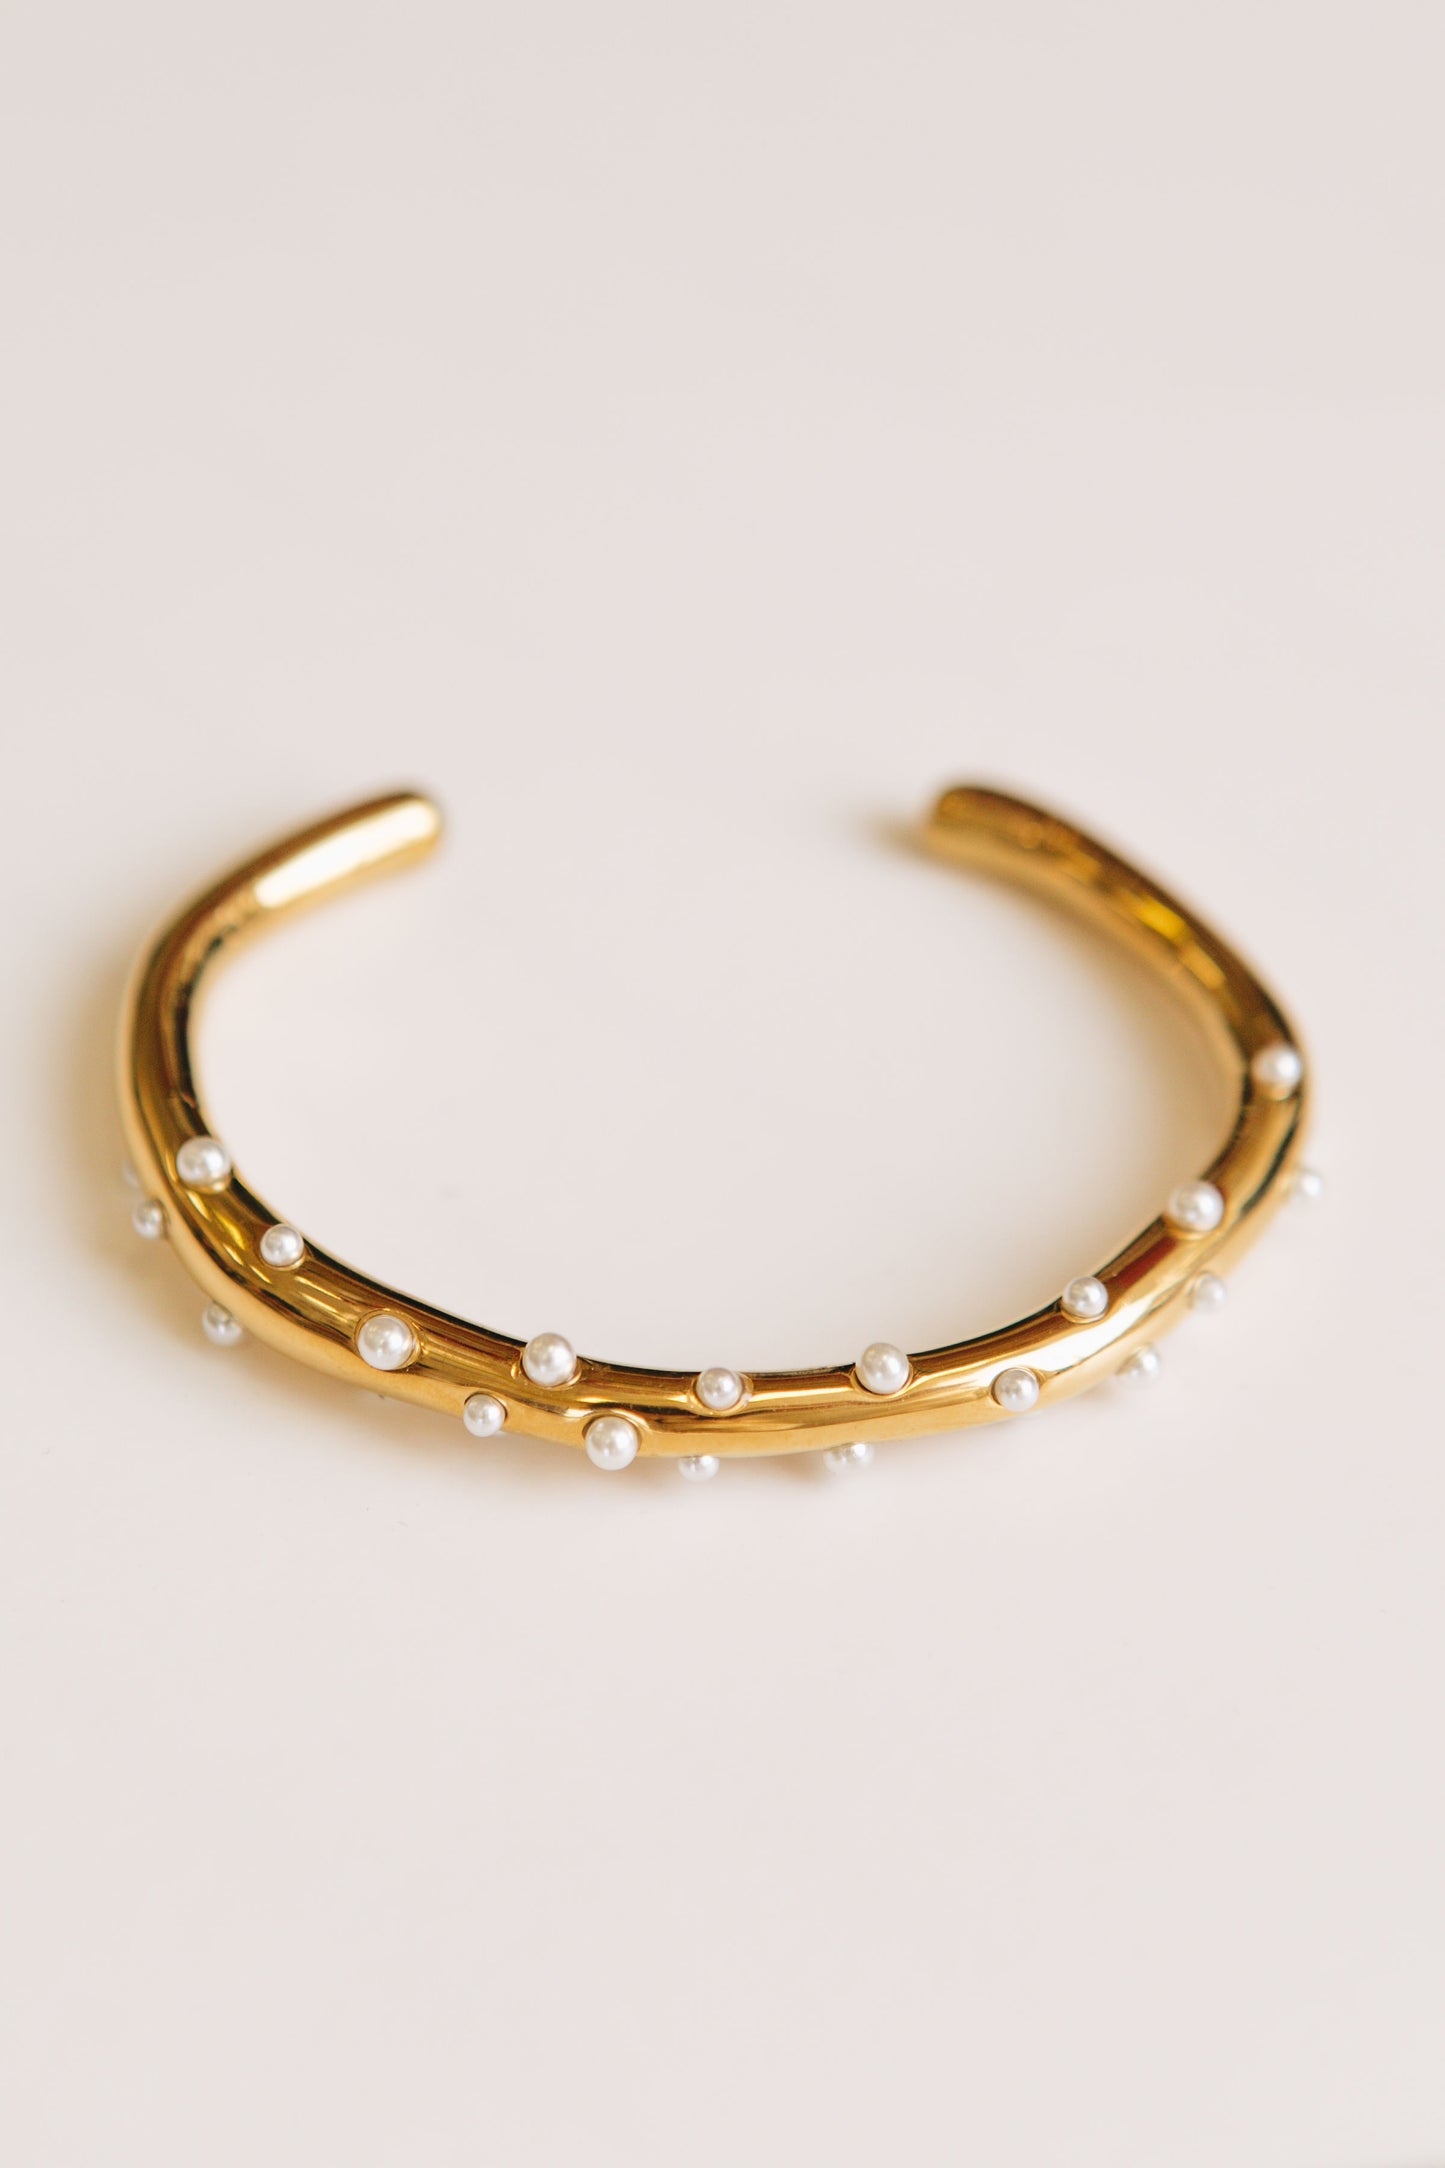 RESTOCKED 9/11 - Pearl Gold Open Cuff Bracelet